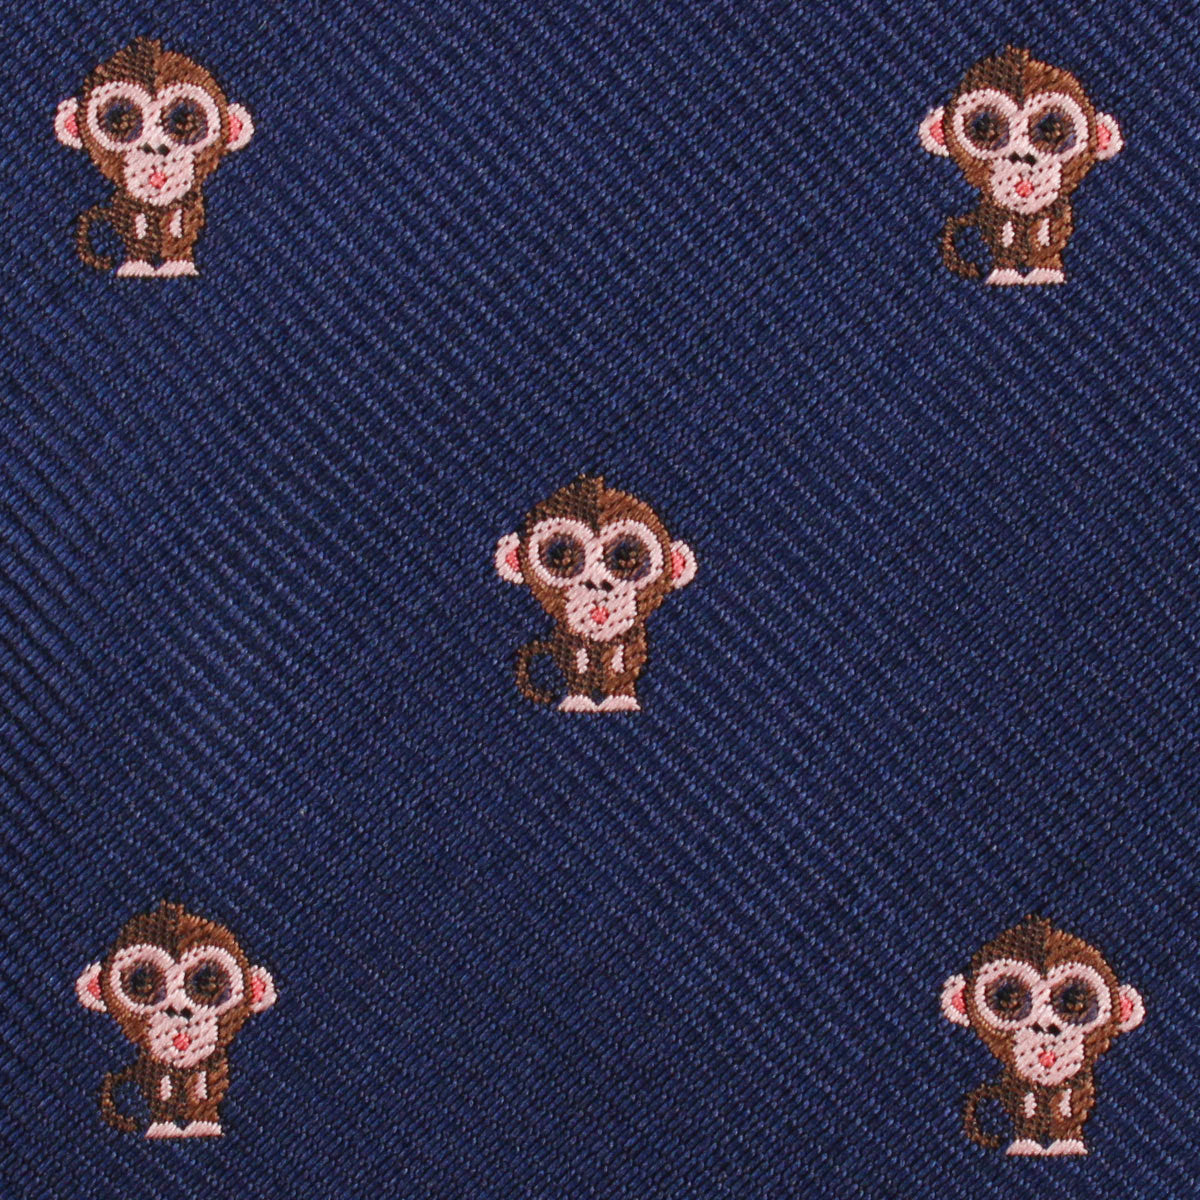 Monkey Fabric Skinny Tie